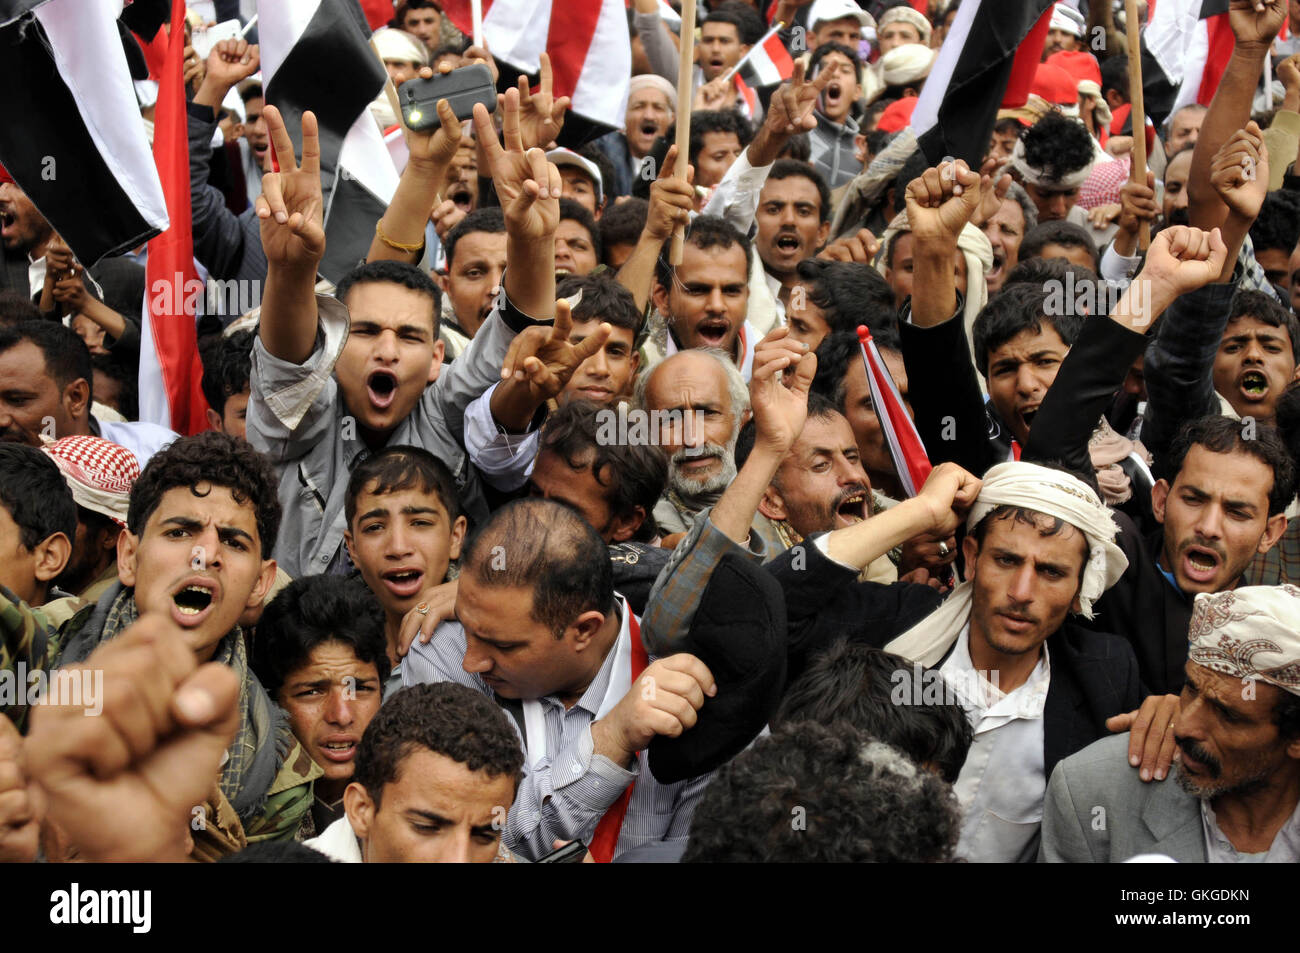 Sanaa, Jemen. 20. August 2016. Menschen Rallye um Unterstützung eines politischen Rates in Sanaa, Jemen, 20. August 2016 zu zeigen. Millionen von Menschen aus allen jemenitischen Gebieten drängten sich Samstag in der Mitte der jemenitischen Hauptstadt Sanaa zu unterstützen und zu segnen die Bildung eines neuen herrschenden politischen Rates unter dem Vorsitz von Huthi-Rebellen und ihre Alliierten mächtigen Partei des ehemaligen Präsidenten Ali Abdullah Saleh. Bildnachweis: Hani Ali/Xinhua/Alamy Live-Nachrichten Stockfoto